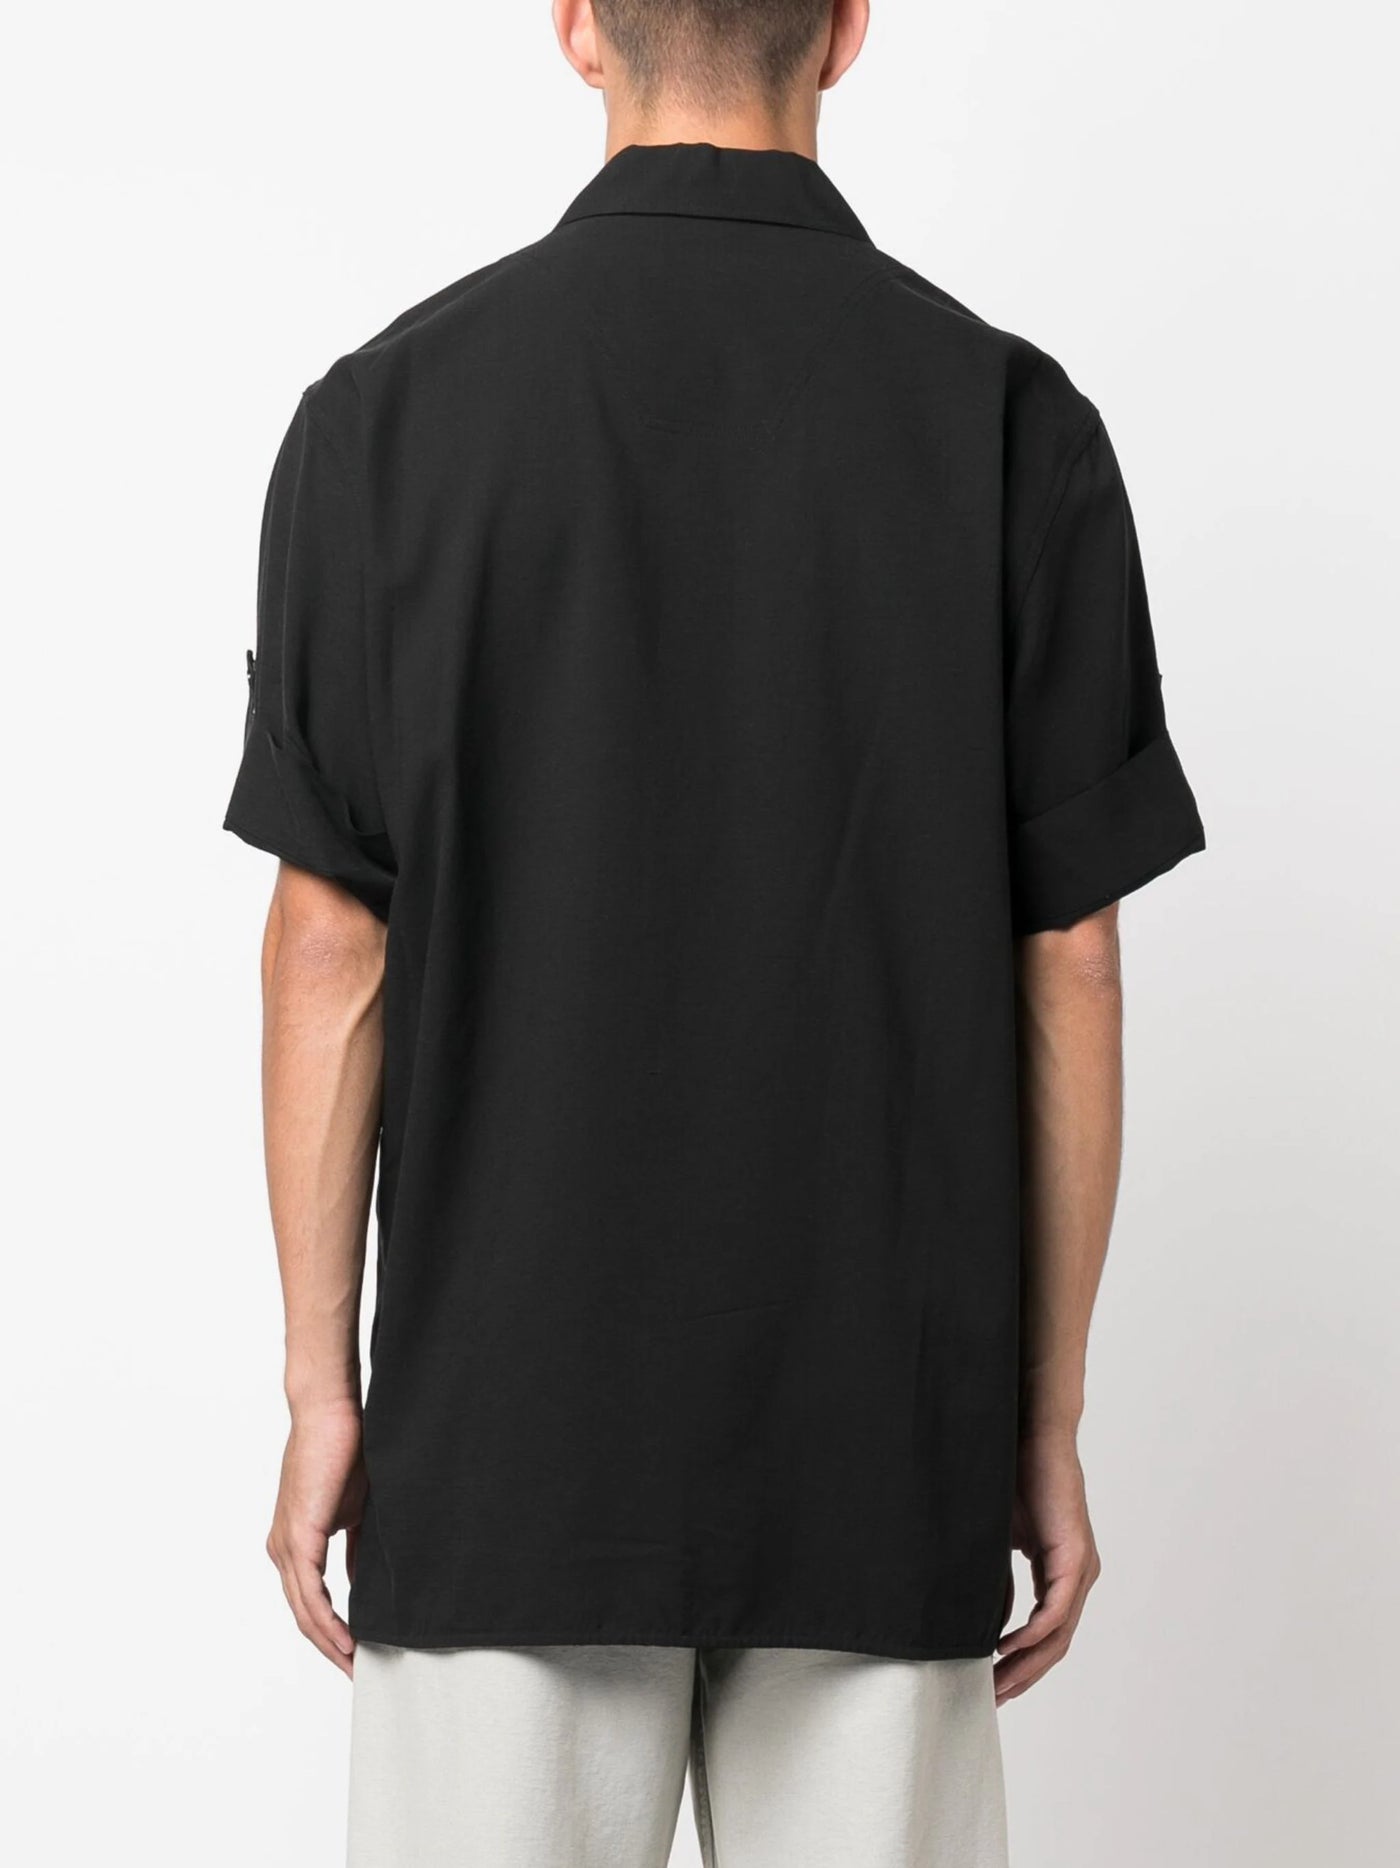 Helmut Lang short-sleeve button-up shirt